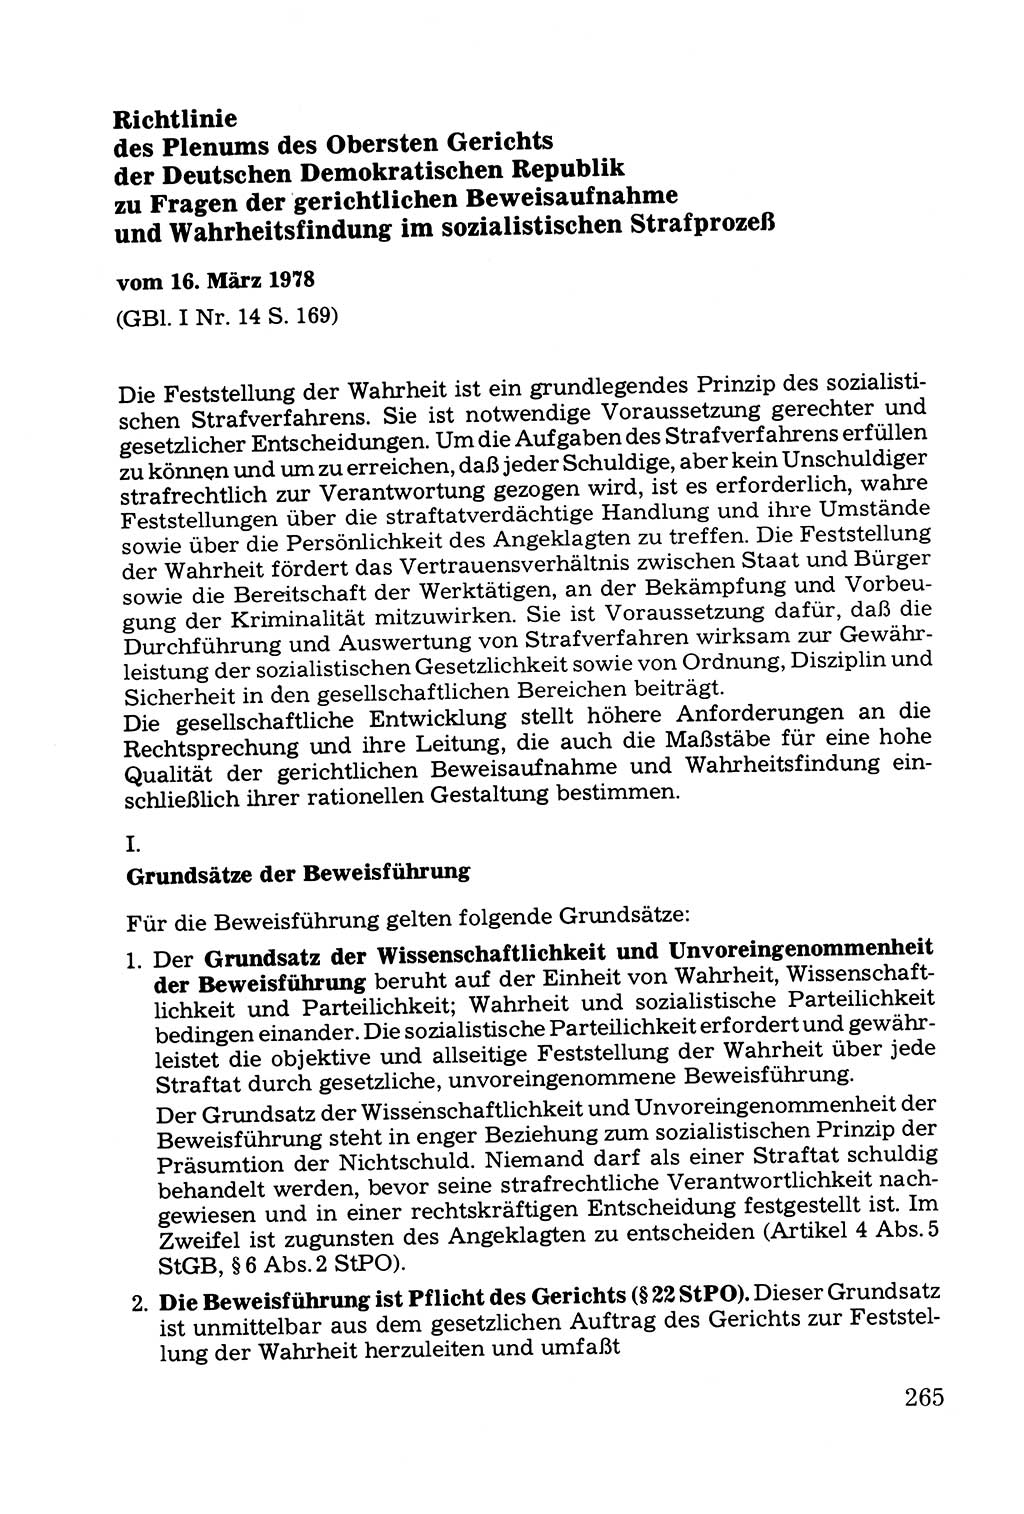 Grundfragen der Beweisführung im Ermittlungsverfahren [Deutsche Demokratische Republik (DDR)] 1980, Seite 265 (Bws.-Fhrg. EV DDR 1980, S. 265)